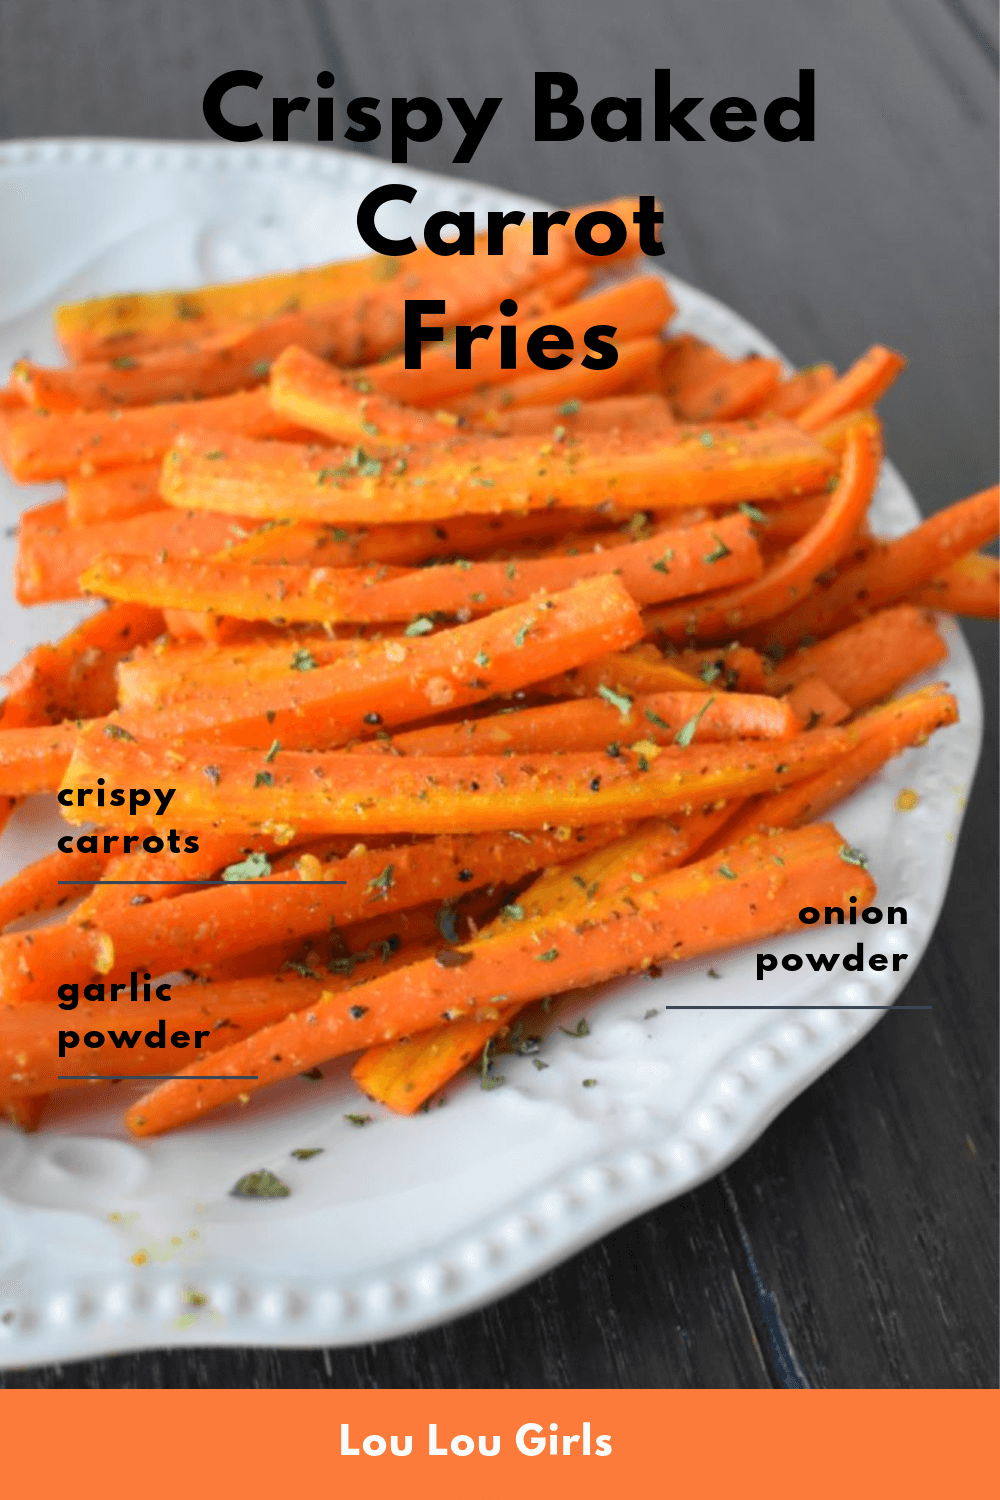 Crispy baked carrot fries